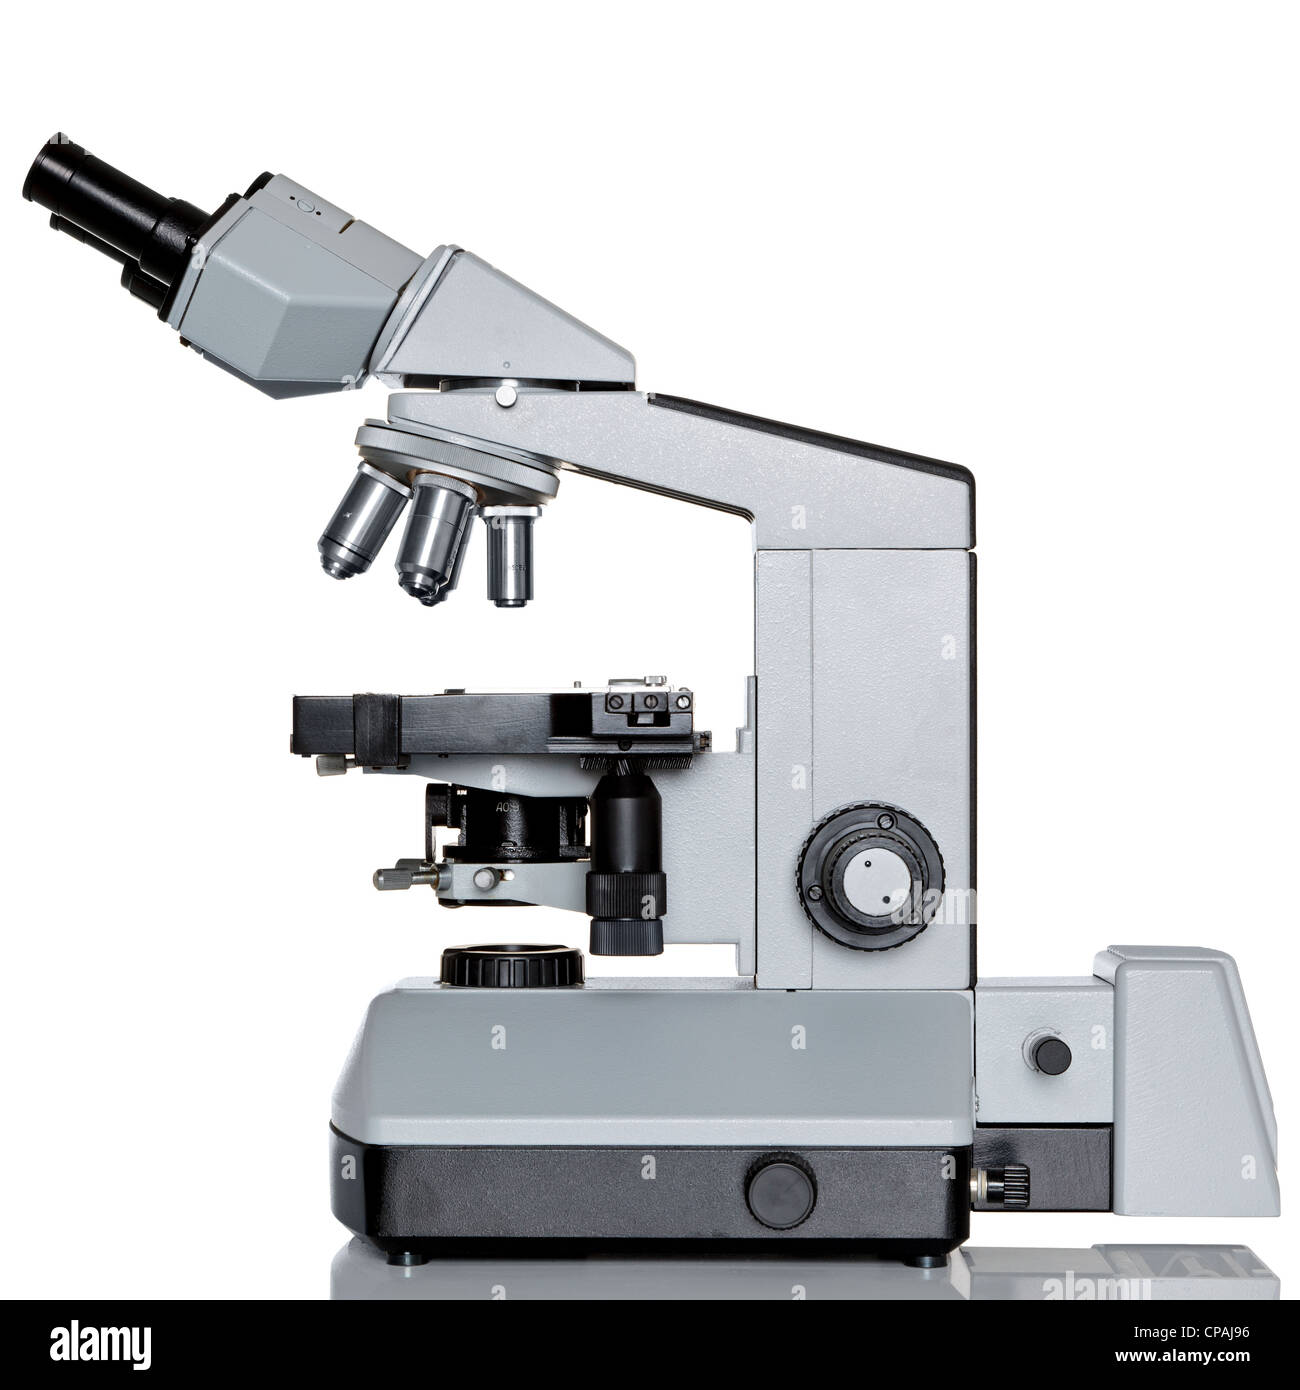 Foto professionali di un laboratorio oculare microscopio con oculare stereo isolato su uno sfondo bianco. Foto Stock